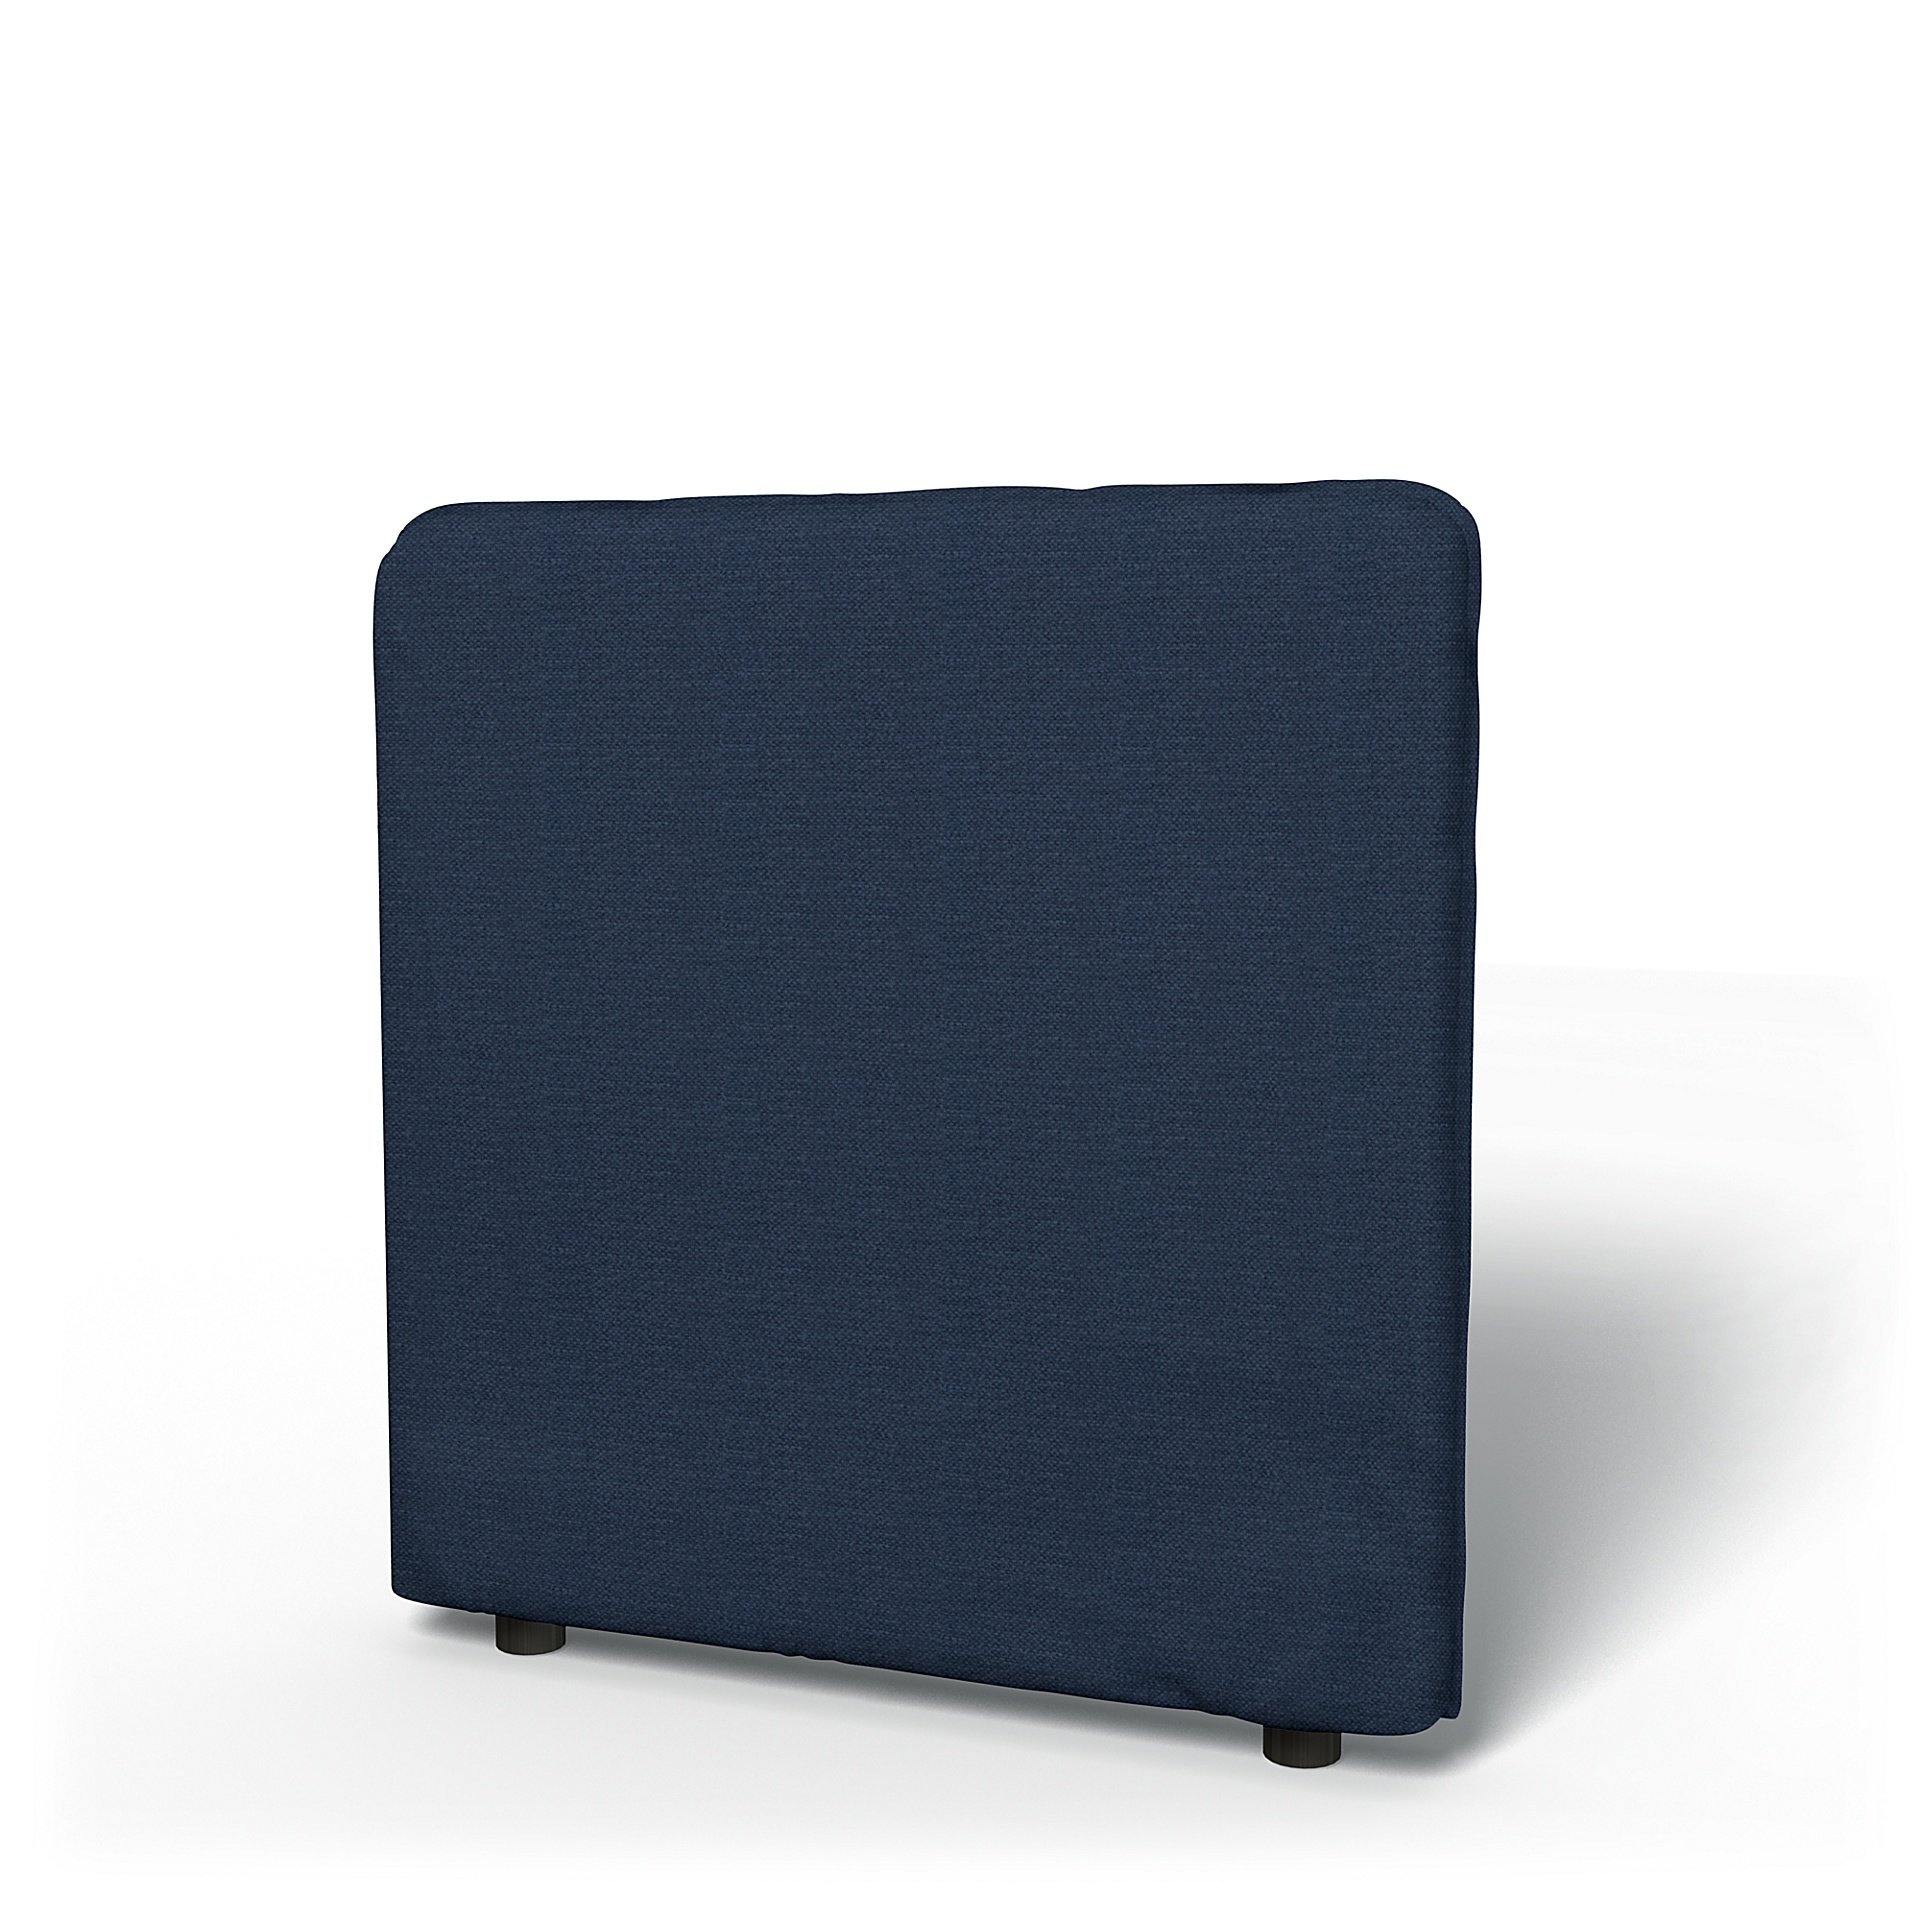 IKEA - Vallentuna Low Backrest Cover 80x80cm 32x32in, Navy Blue, Linen - Bemz